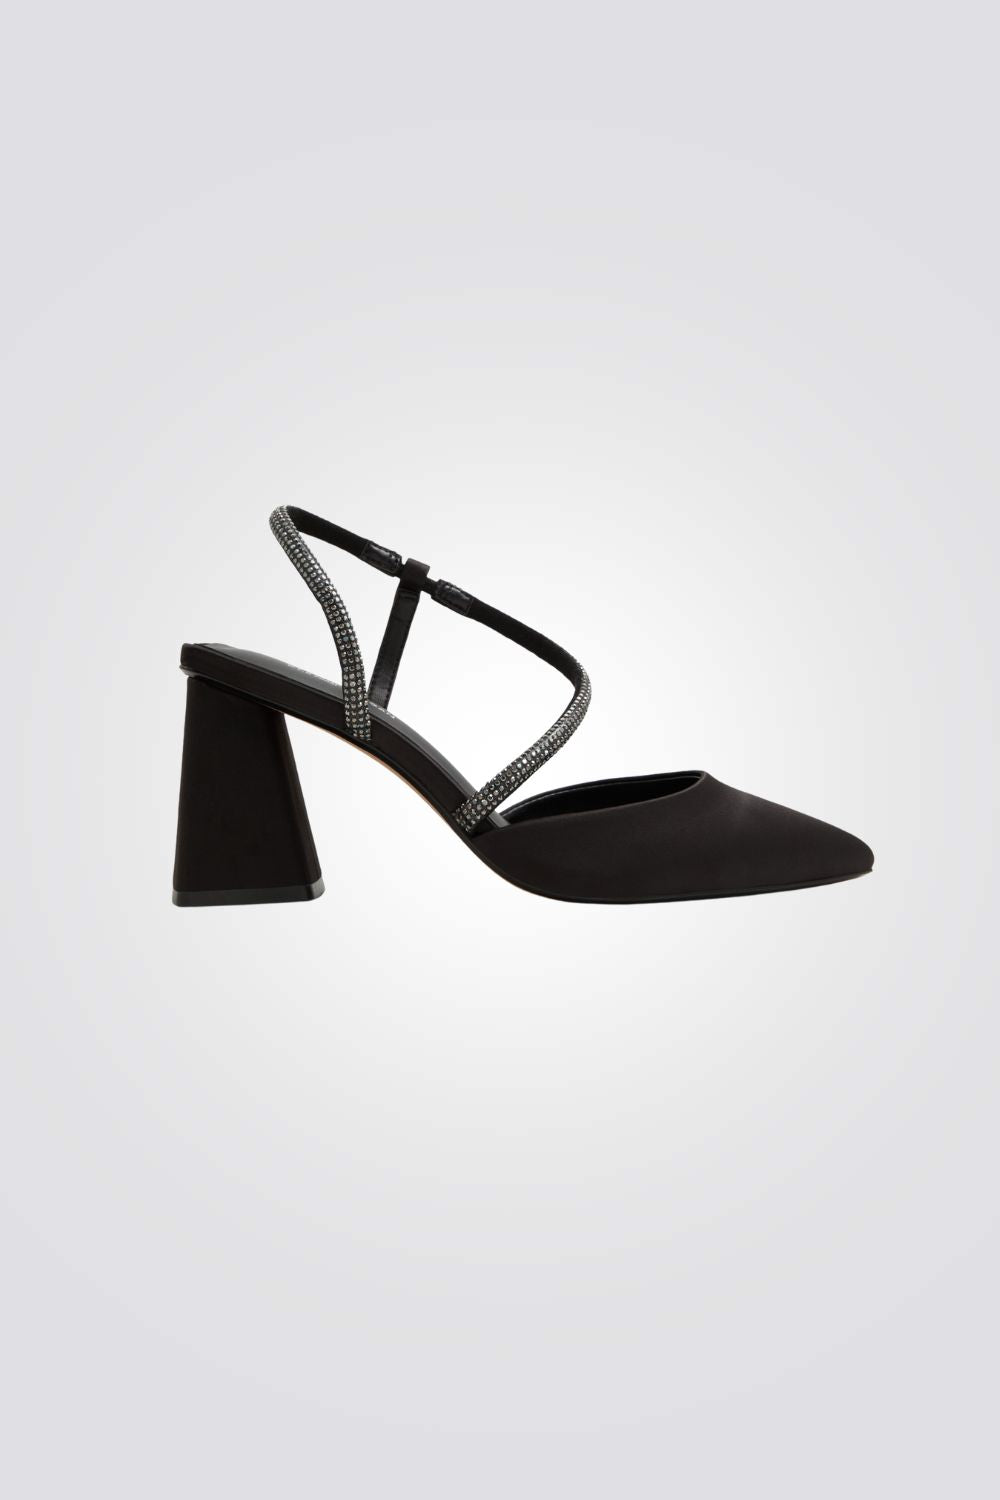 נעלי עקב לנשים דגם PETRRAA שחור 